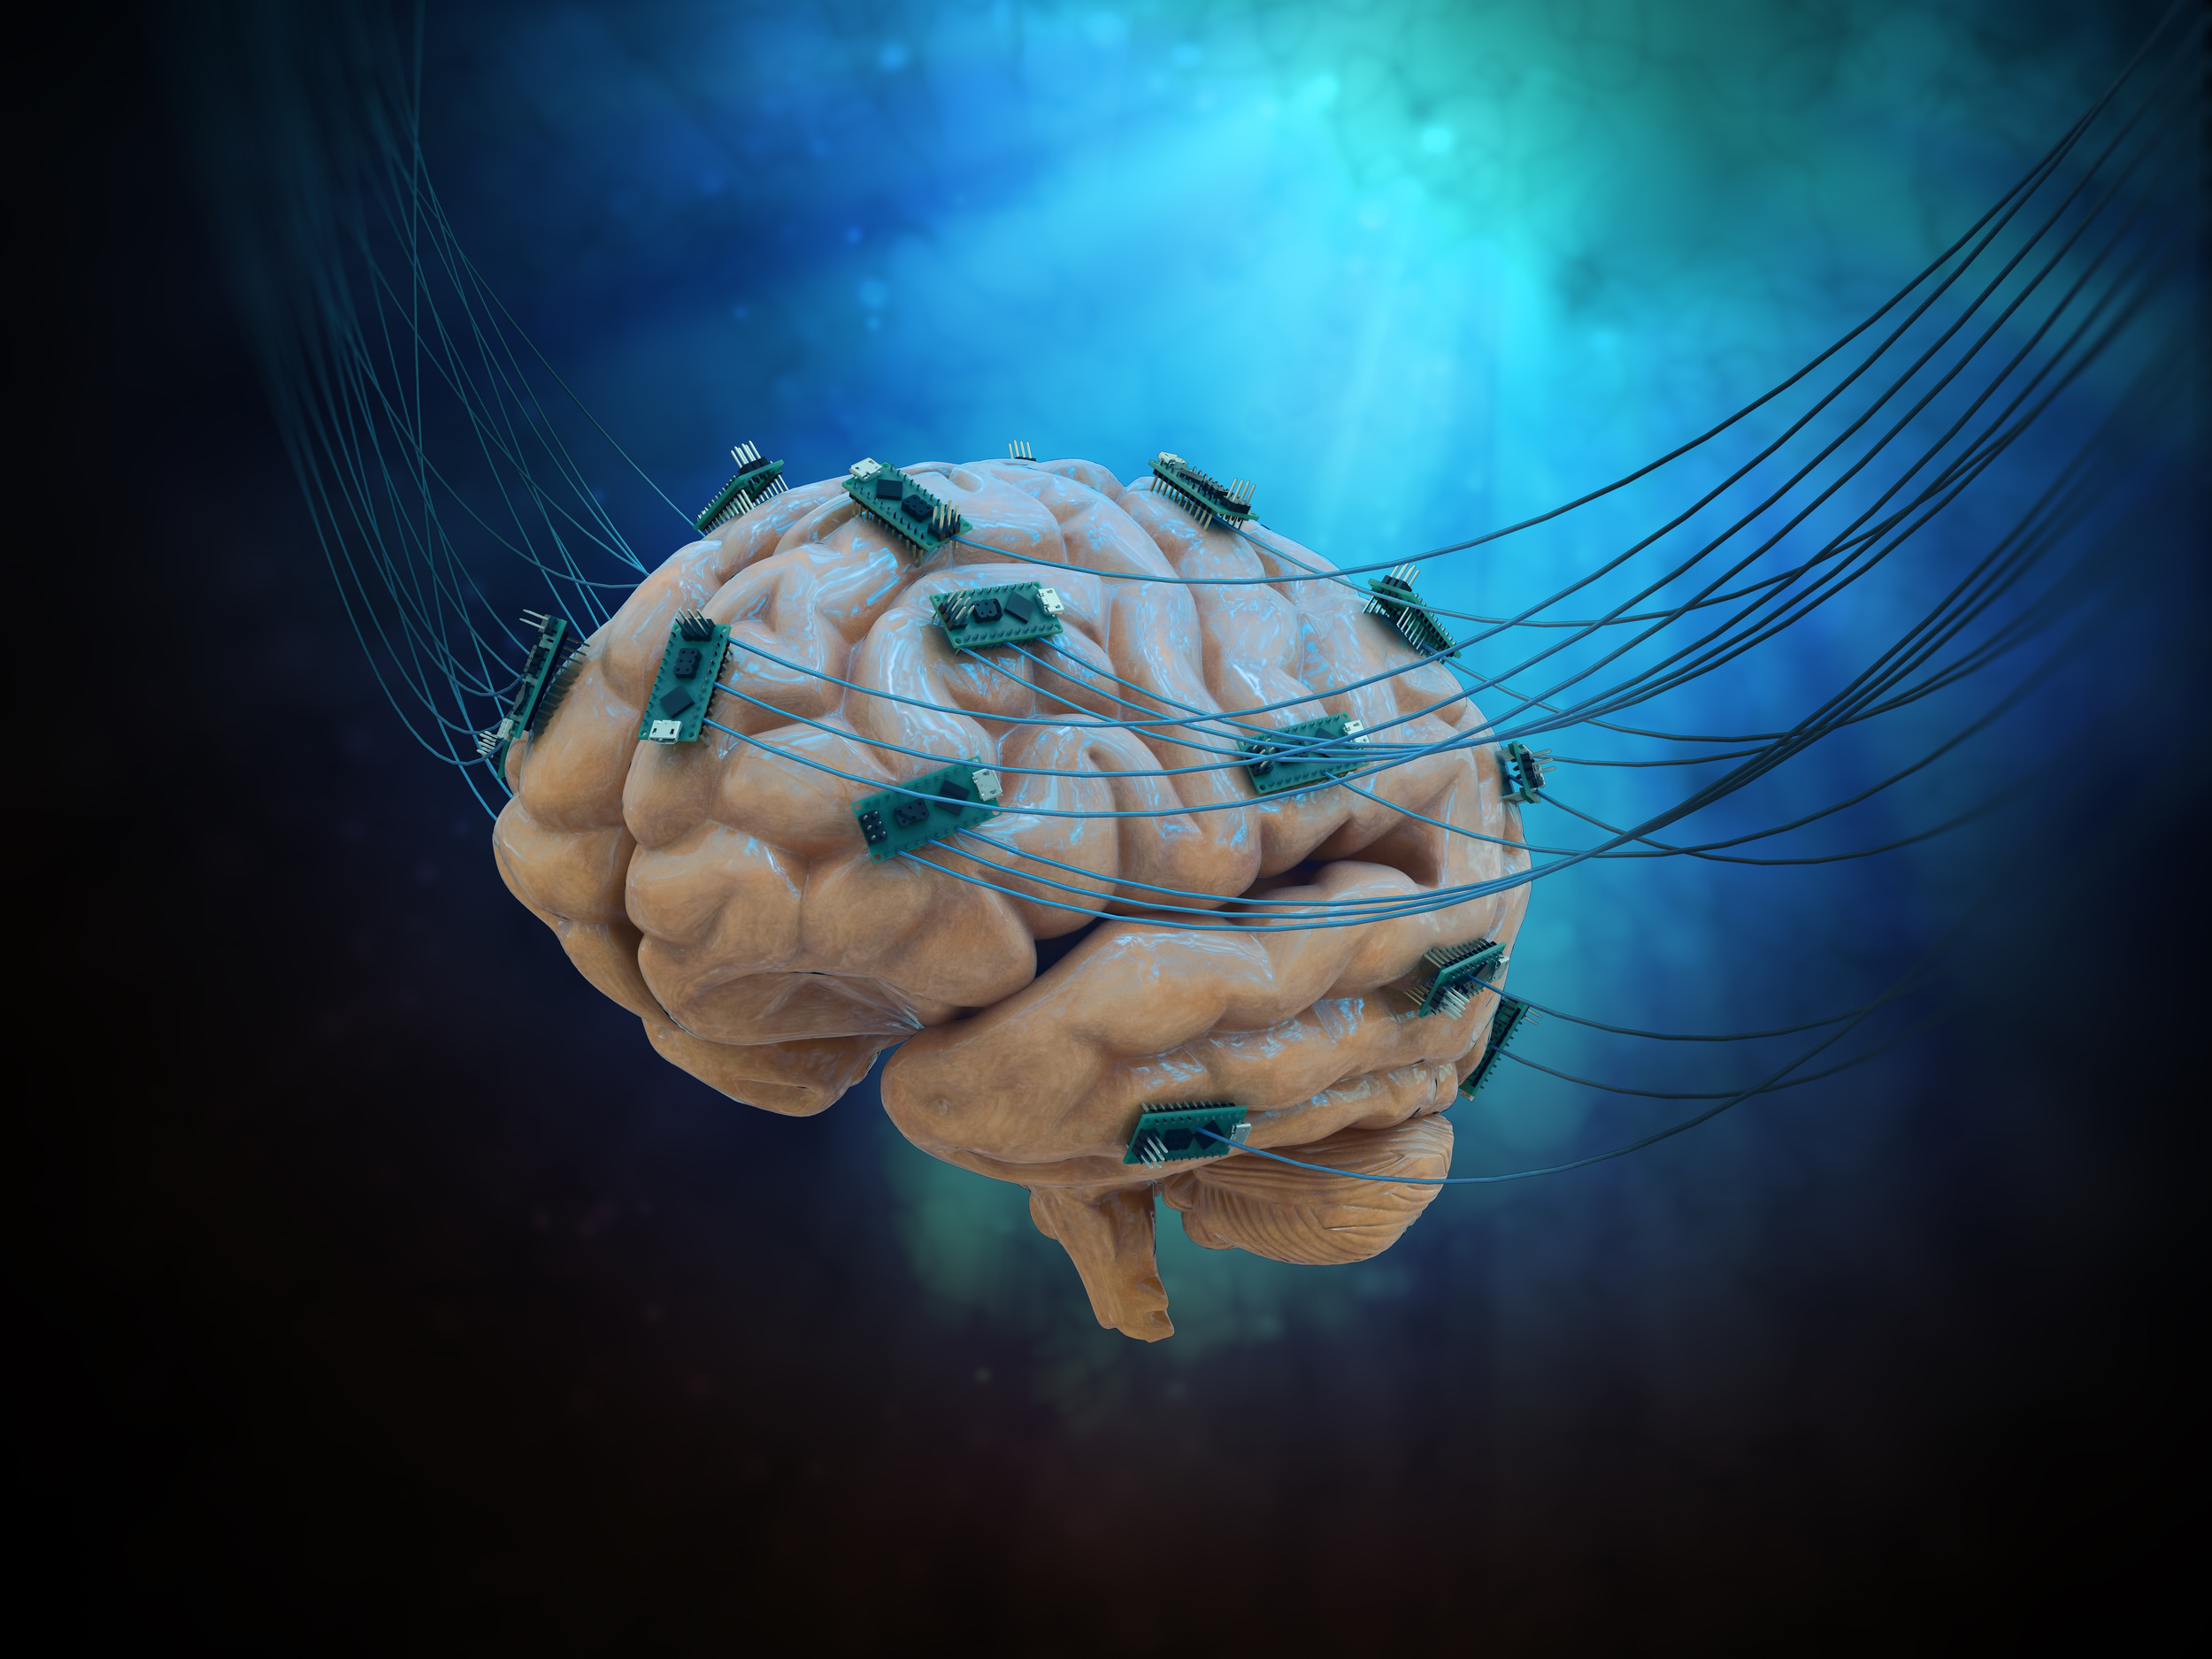 La stimulation électrique de deux zones distinctes du cerveau a amélioré la mémoire à court ou à long terme chez des personnes âgées. © Mopic, Adobe Stock